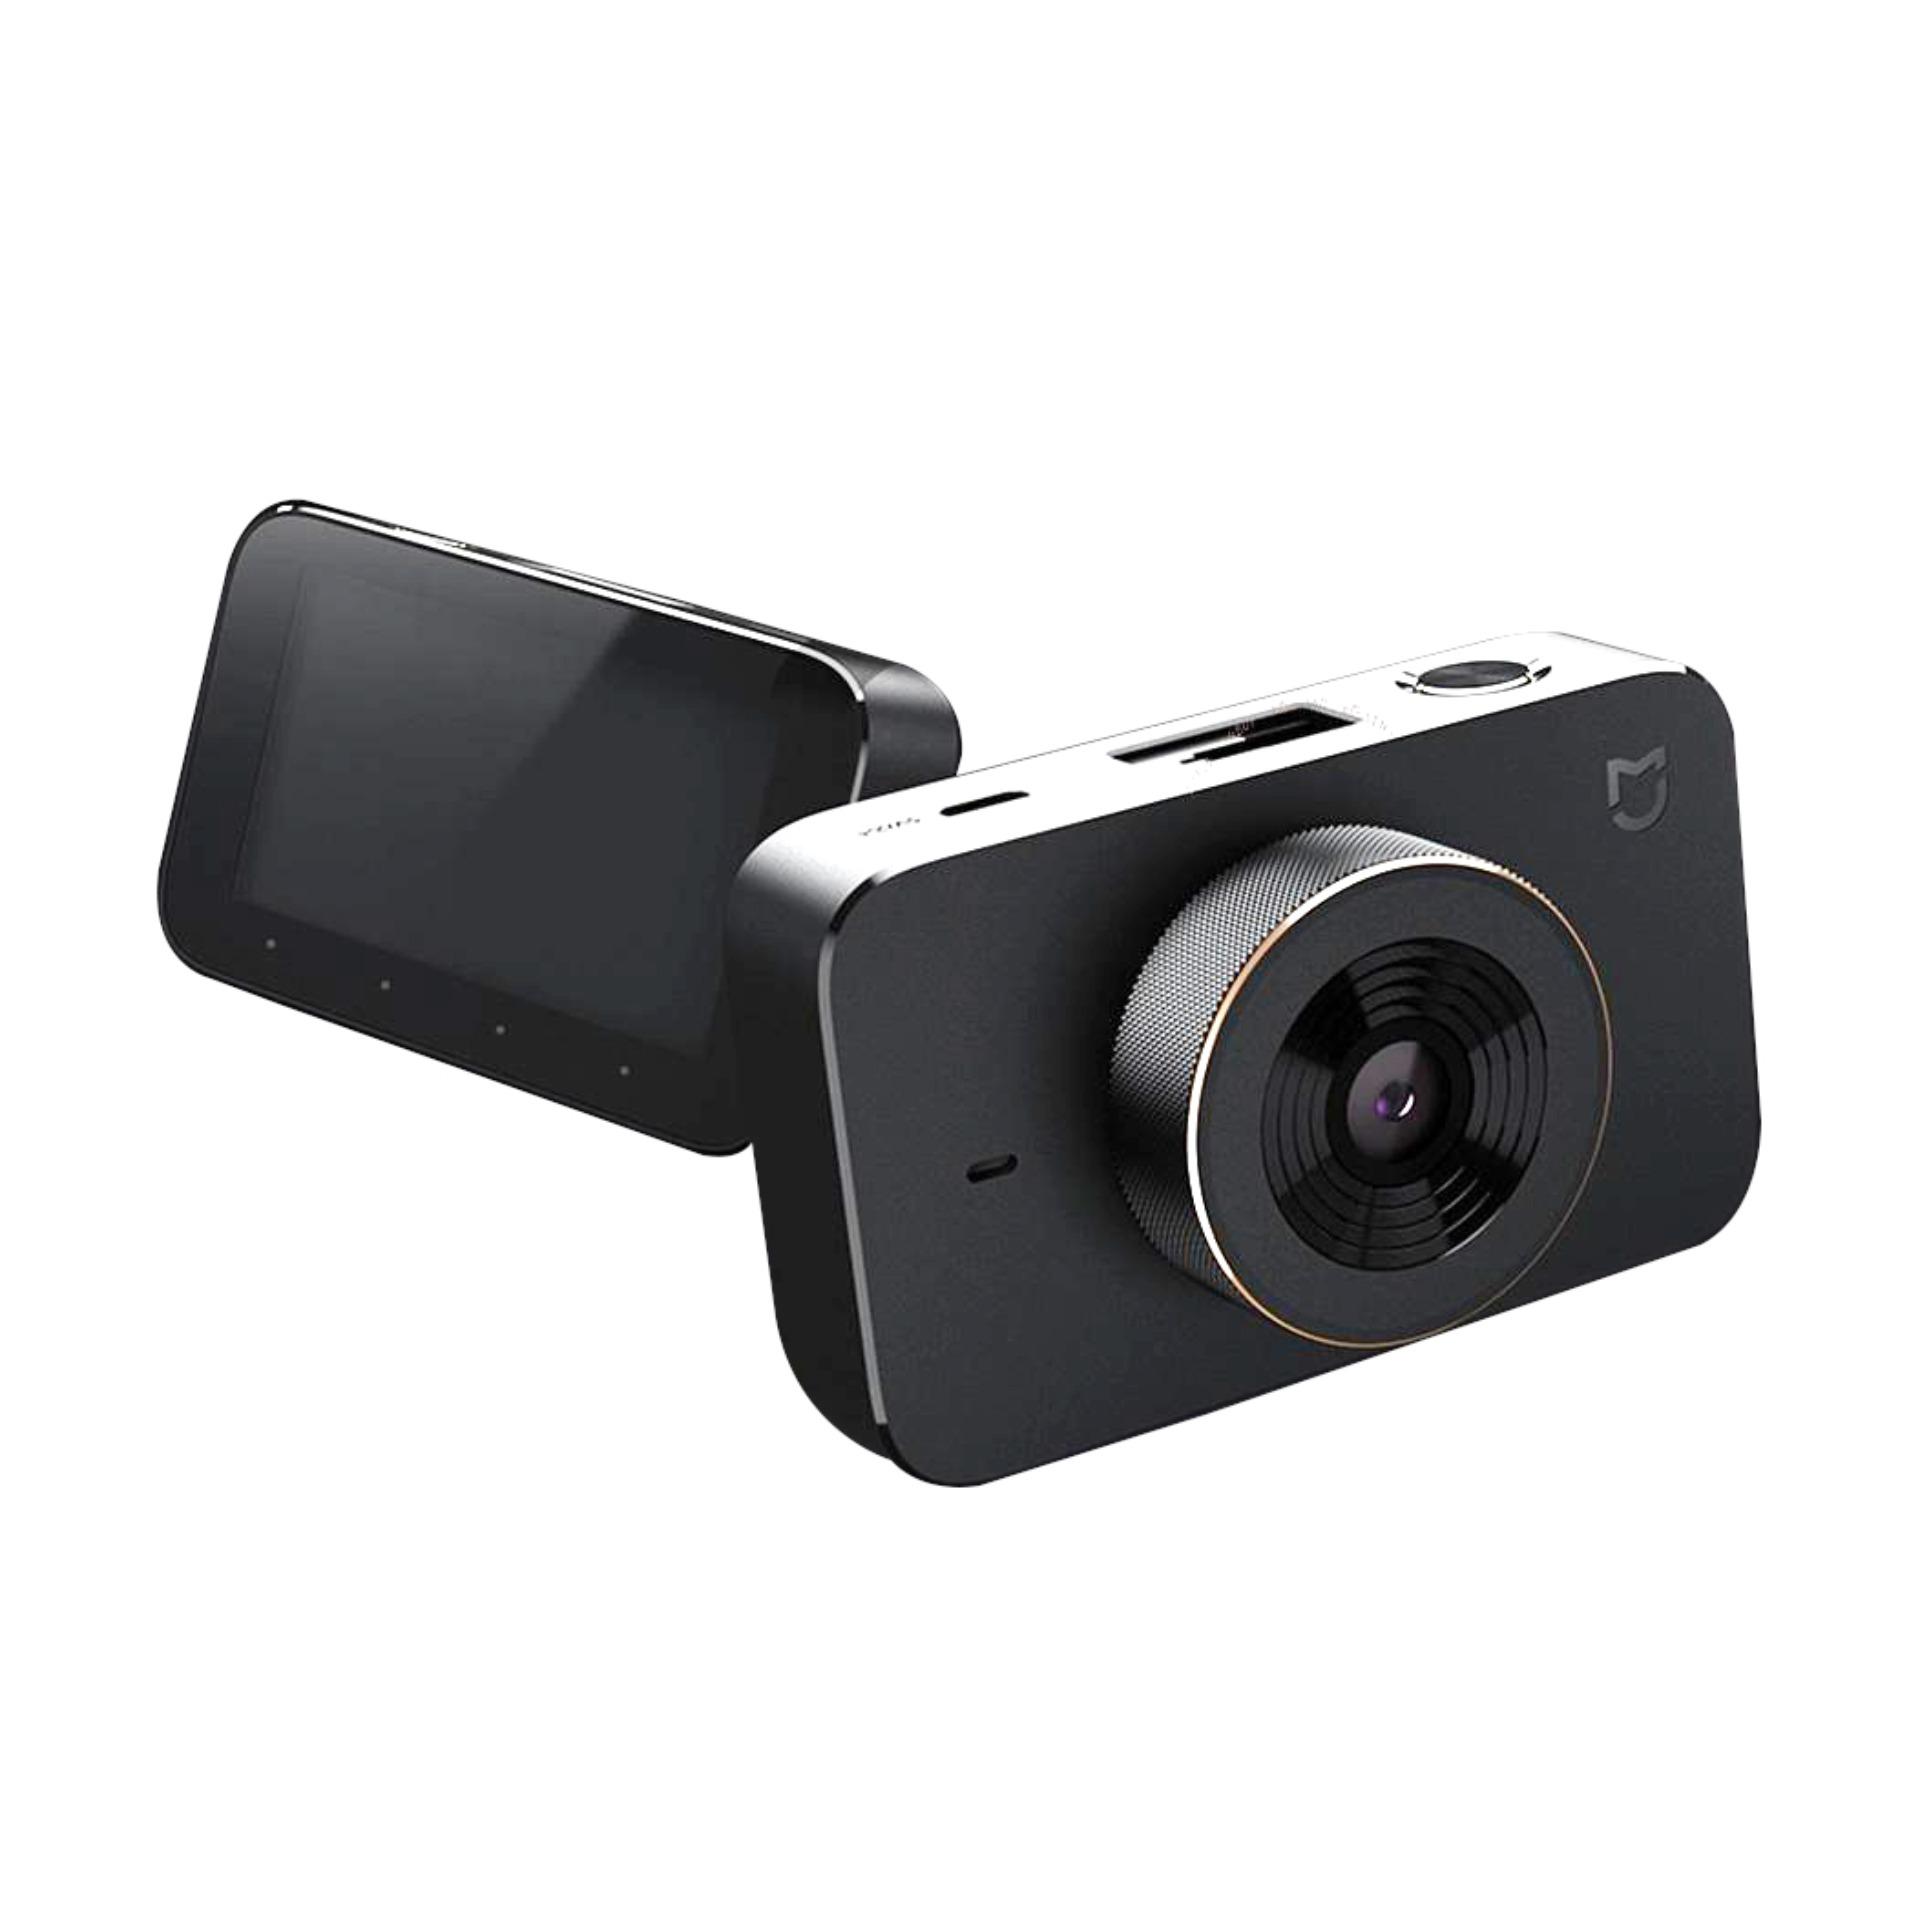 Xiaomi Mi กล้องติดรถยนต์ Dashcam (black) ปี 2018 ประกันศูนย์